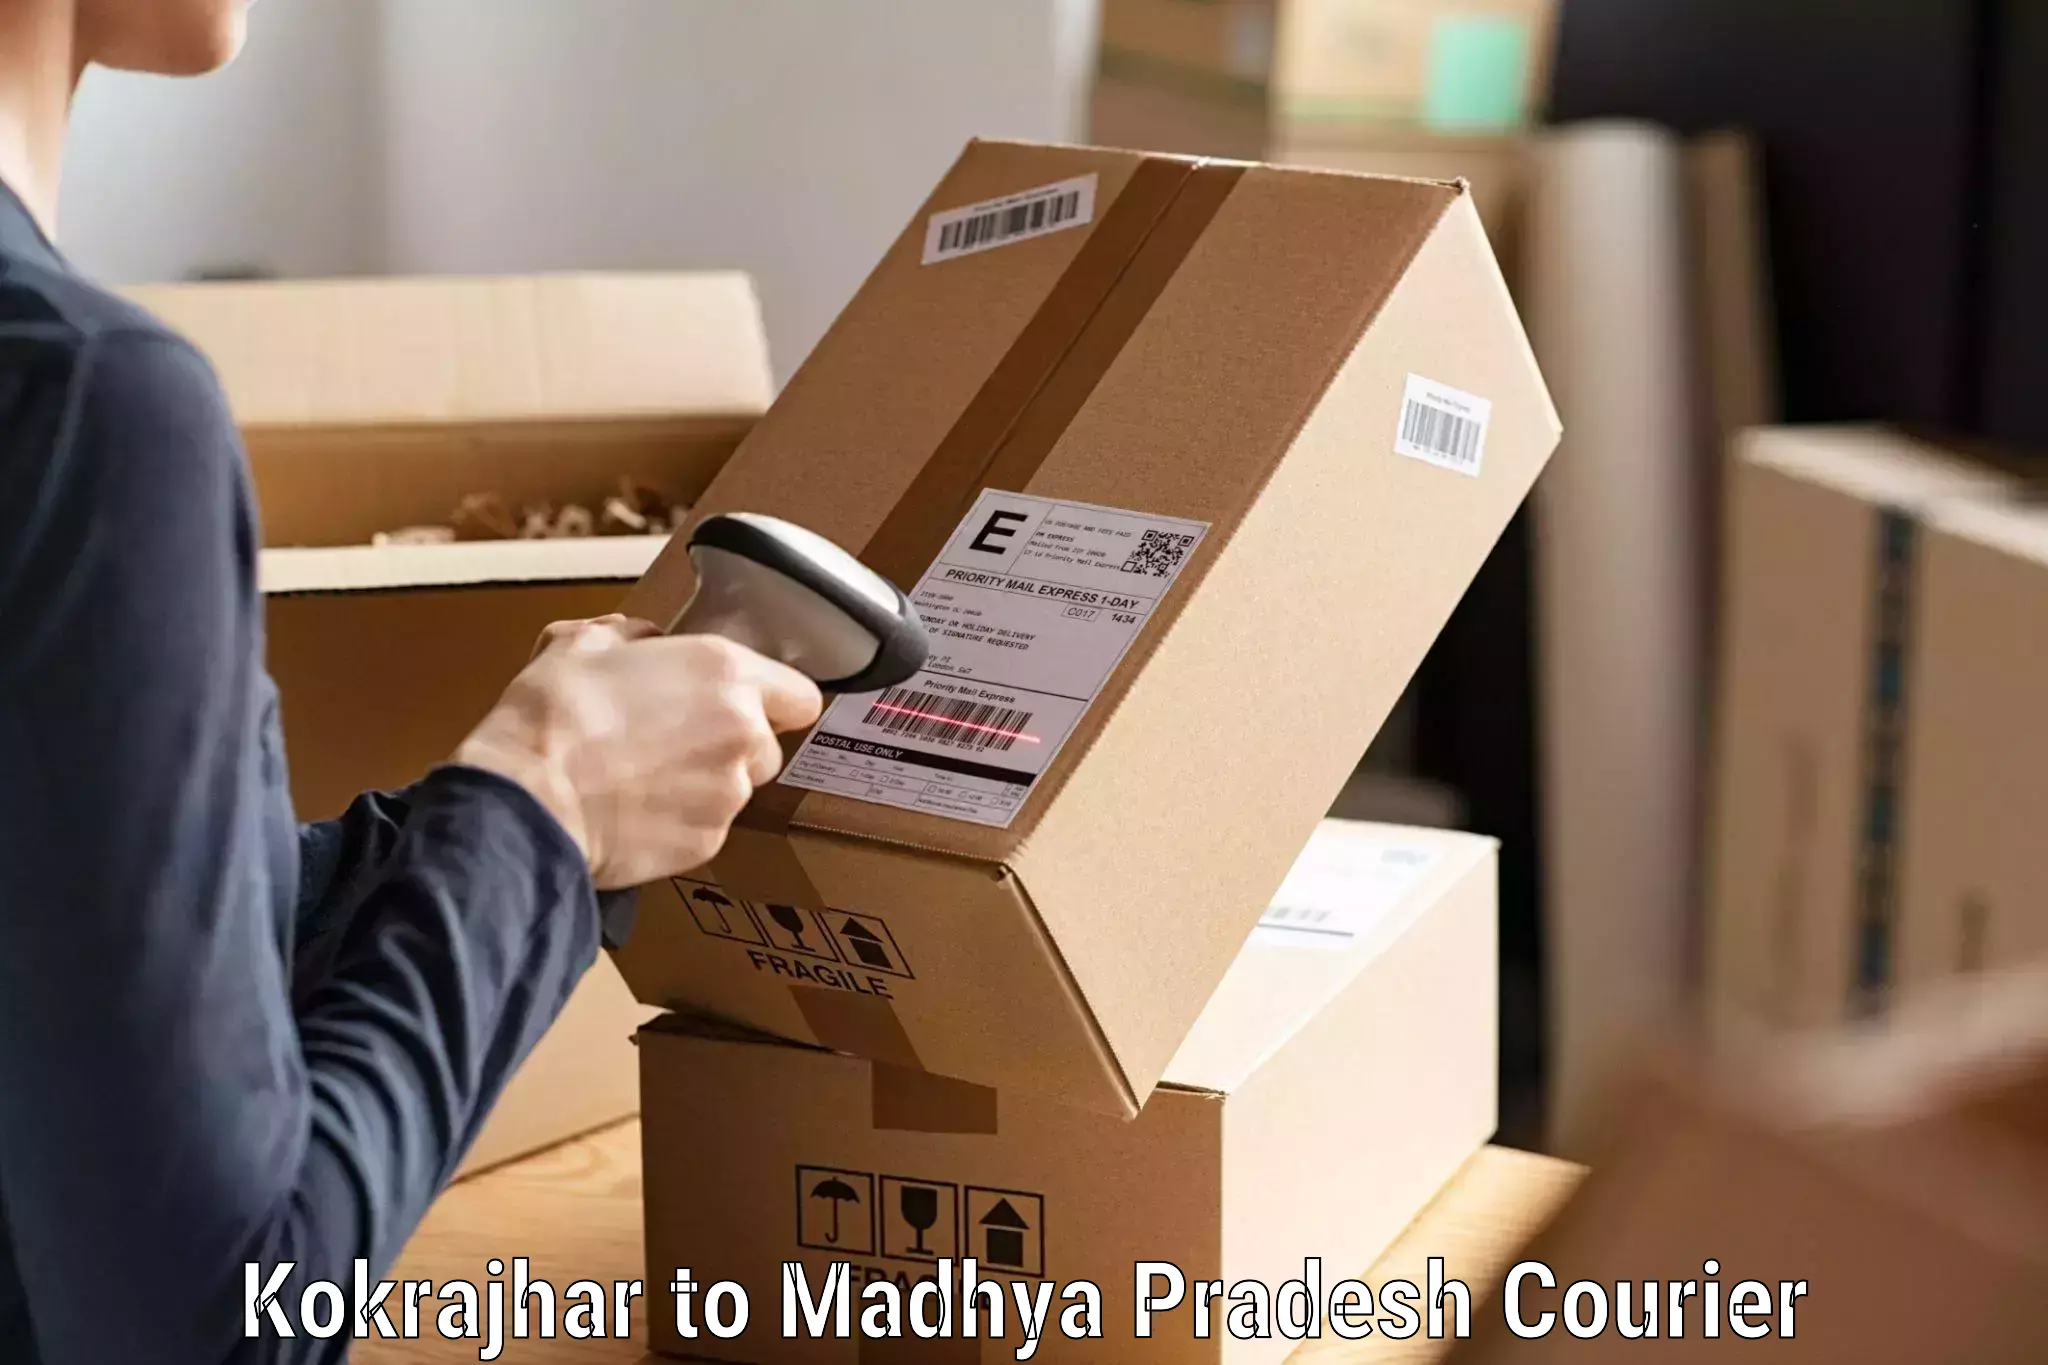 Individual parcel service Kokrajhar to Dhar